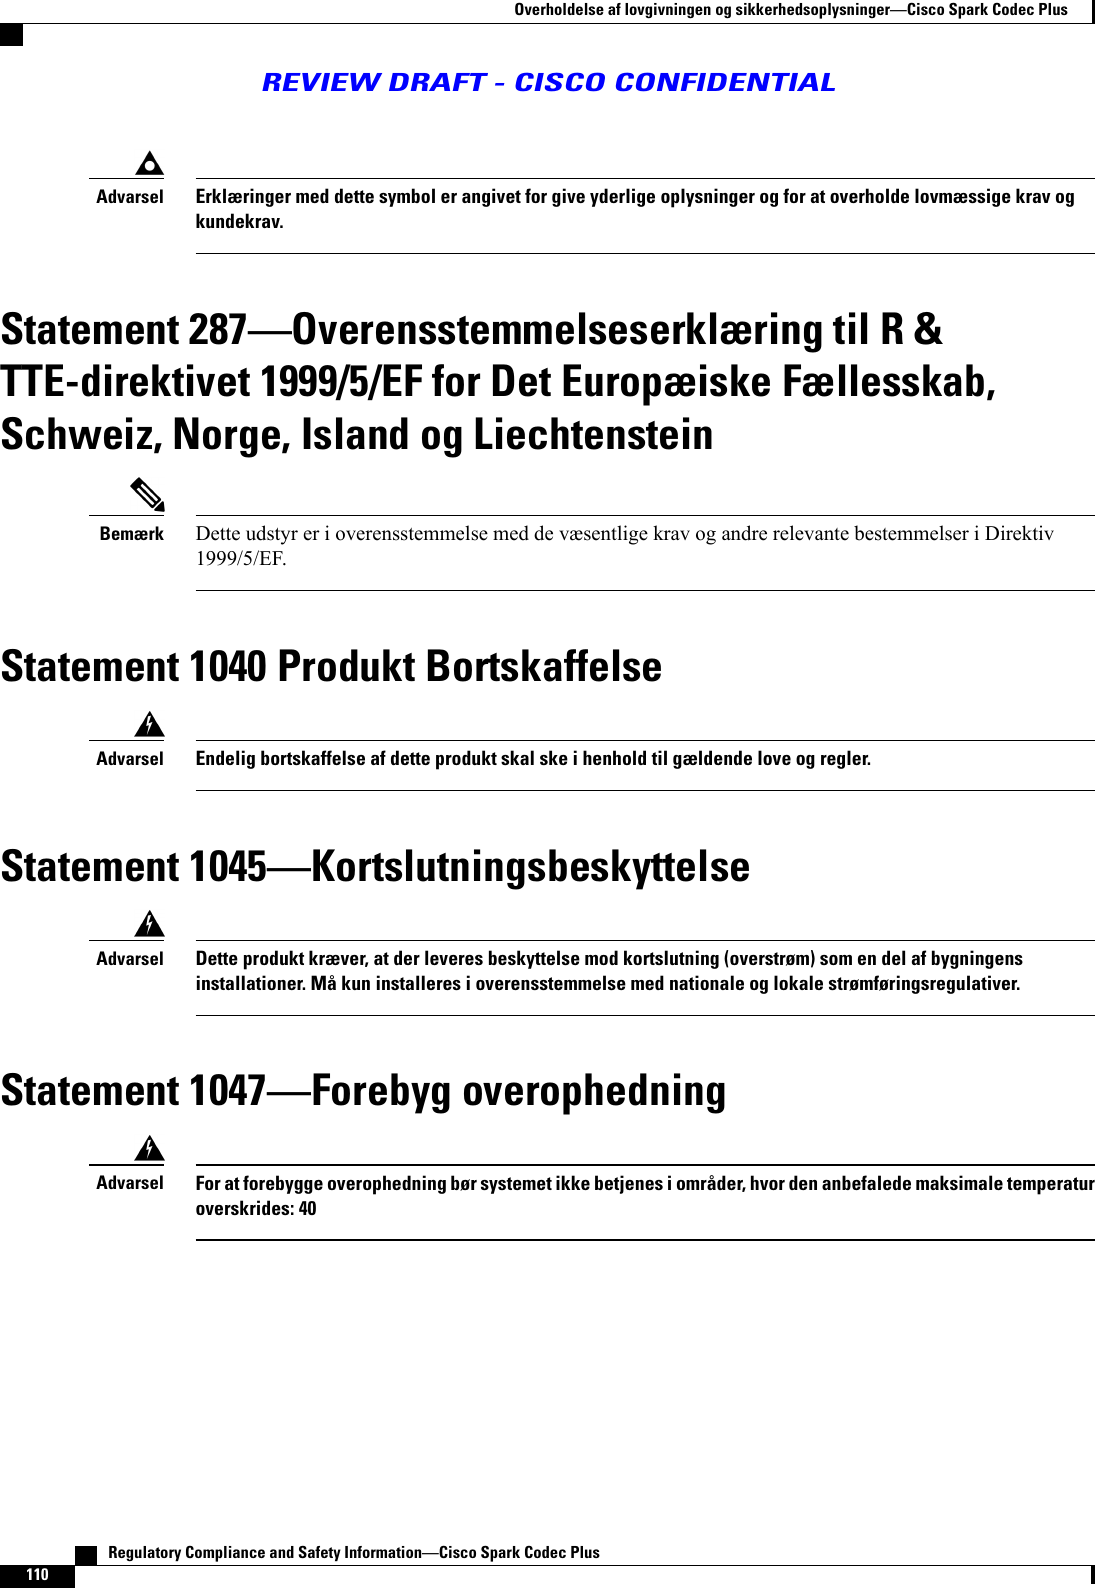 Erklæringer med dette symbol er angivet for give yderlige oplysninger og for at overholde lovmæssige krav ogkundekrav.AdvarselStatement 287Overensstemmelseserklæring til R &amp;TTE-direktivet 1999/5/EF for Det Europæiske Fællesskab,Schweiz, Norge, Island og LiechtensteinDette udstyr er i overensstemmelse med de væsentlige krav og andre relevante bestemmelser i Direktiv1999/5/EF.BemærkStatement 1040 Produkt BortskaffelseEndelig bortskaffelse af dette produkt skal ske i henhold til gældende love og regler.AdvarselStatement 1045KortslutningsbeskyttelseDette produkt kræver, at der leveres beskyttelse mod kortslutning (overstrøm) som en del af bygningensinstallationer. Må kun installeres i overensstemmelse med nationale og lokale strømføringsregulativer.AdvarselStatement 1047Forebyg overophedningFor at forebygge overophedning bør systemet ikke betjenes i områder, hvor den anbefalede maksimale temperaturoverskrides: 40Advarsel   Regulatory Compliance and Safety InformationCisco Spark Codec Plus110Overholdelse af lovgivningen og sikkerhedsoplysningerCisco Spark Codec PlusREVIEW DRAFT - CISCO CONFIDENTIAL